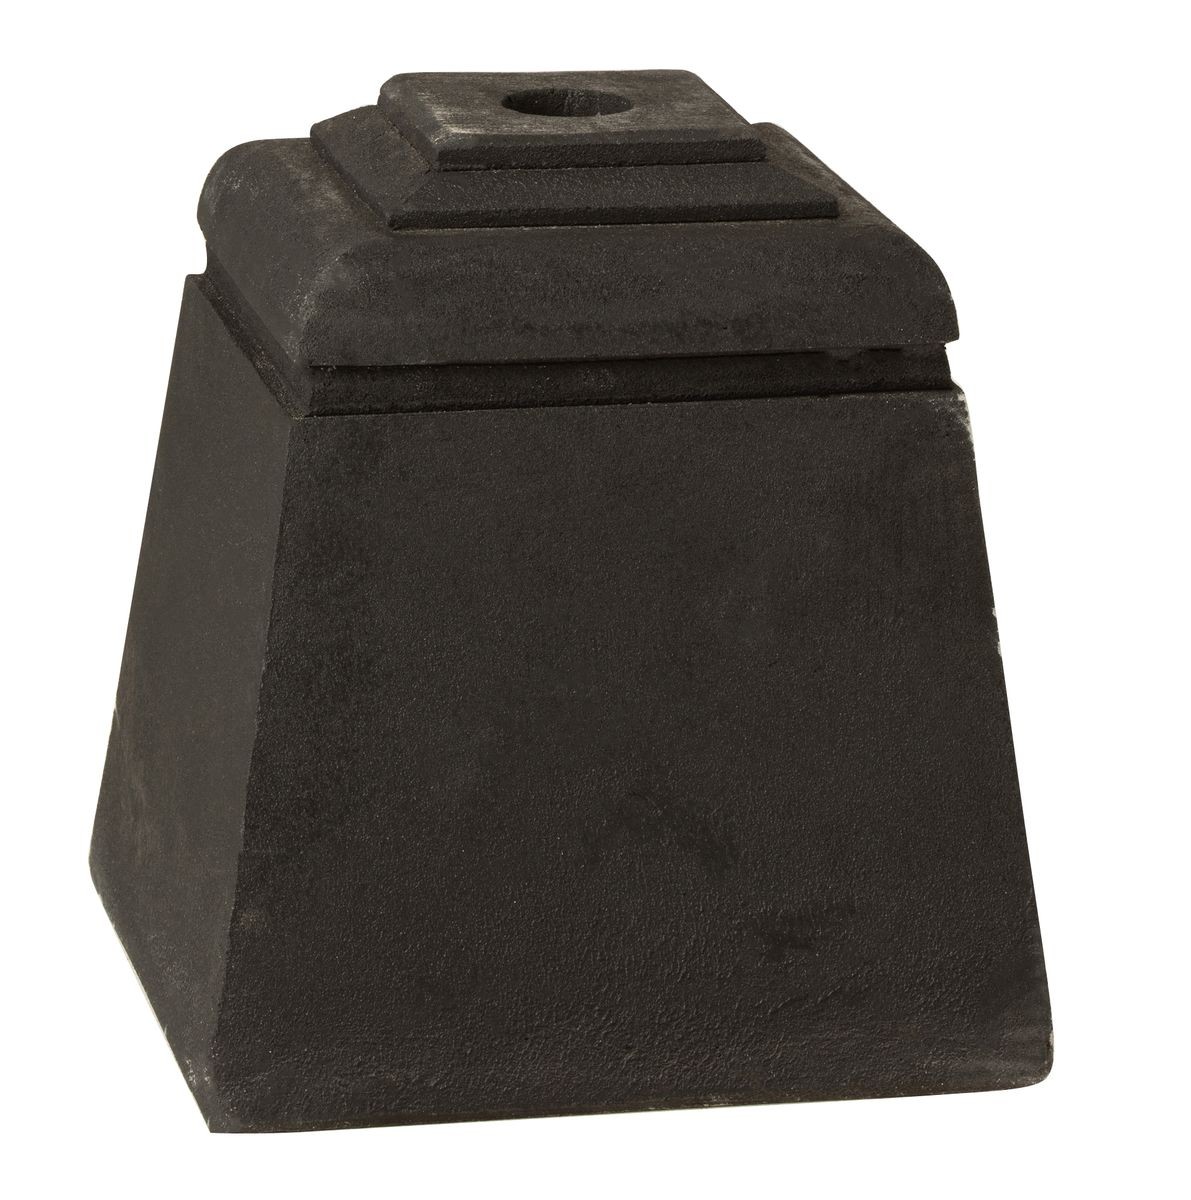 Černý betonový stojan na slunečník Parra - 28*28*30 cm 10858